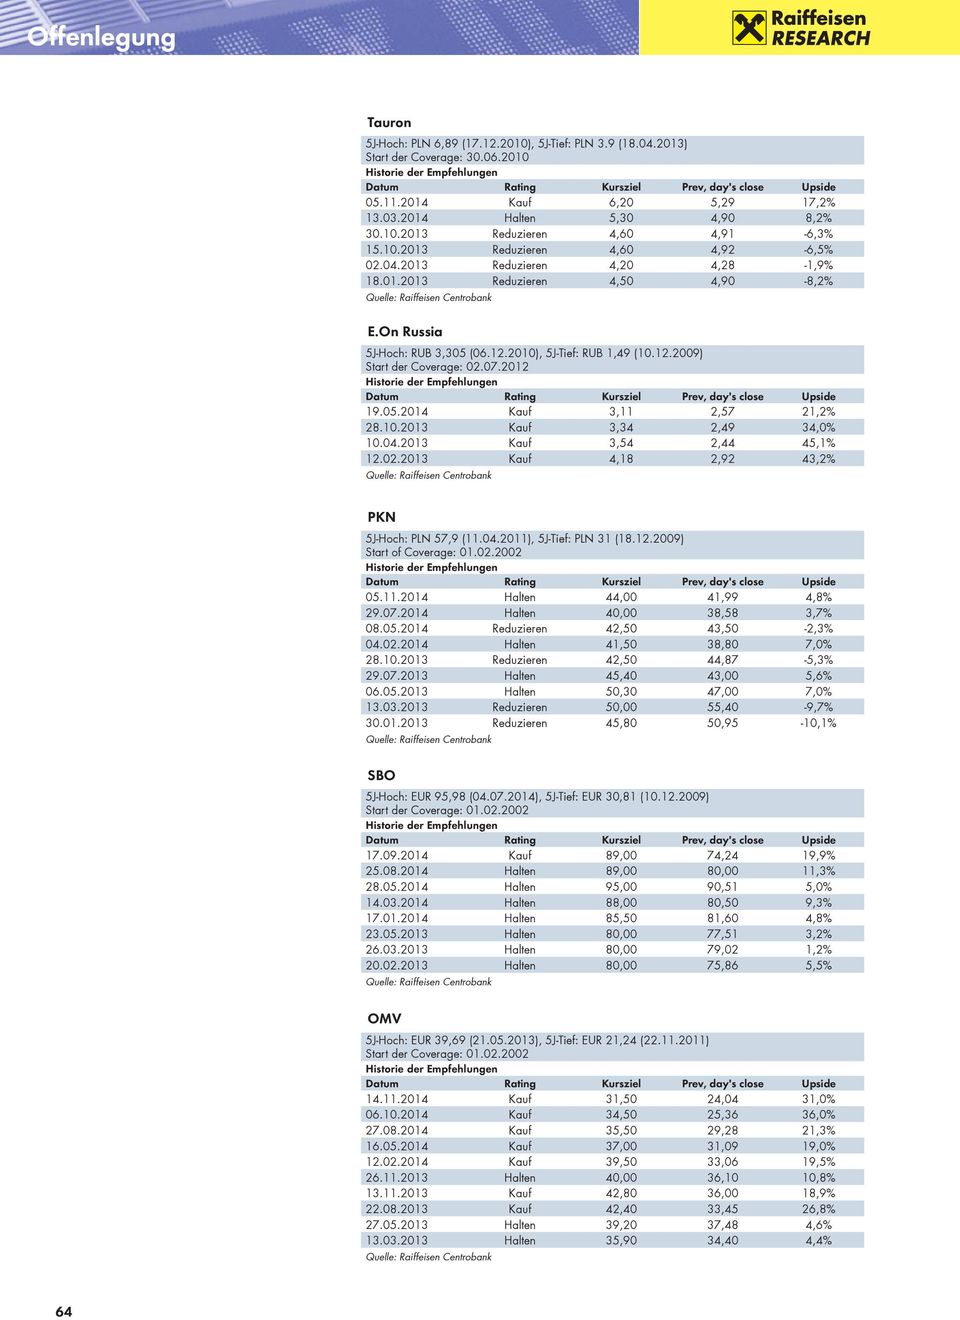 07.2012 19.05.2014 Kauf 3,11 2,57 21,2% 28.10.2013 Kauf 3,34 2,49 34,0% 10.04.2013 Kauf 3,54 2,44 45,1% 12.02.2013 Kauf 4,18 2,92 43,2% PKN 5J-Hoch: PLN 57,9 (11.04.2011), 5J-Tief: PLN 31 (18.12.2009) Start of Coverage: 01.